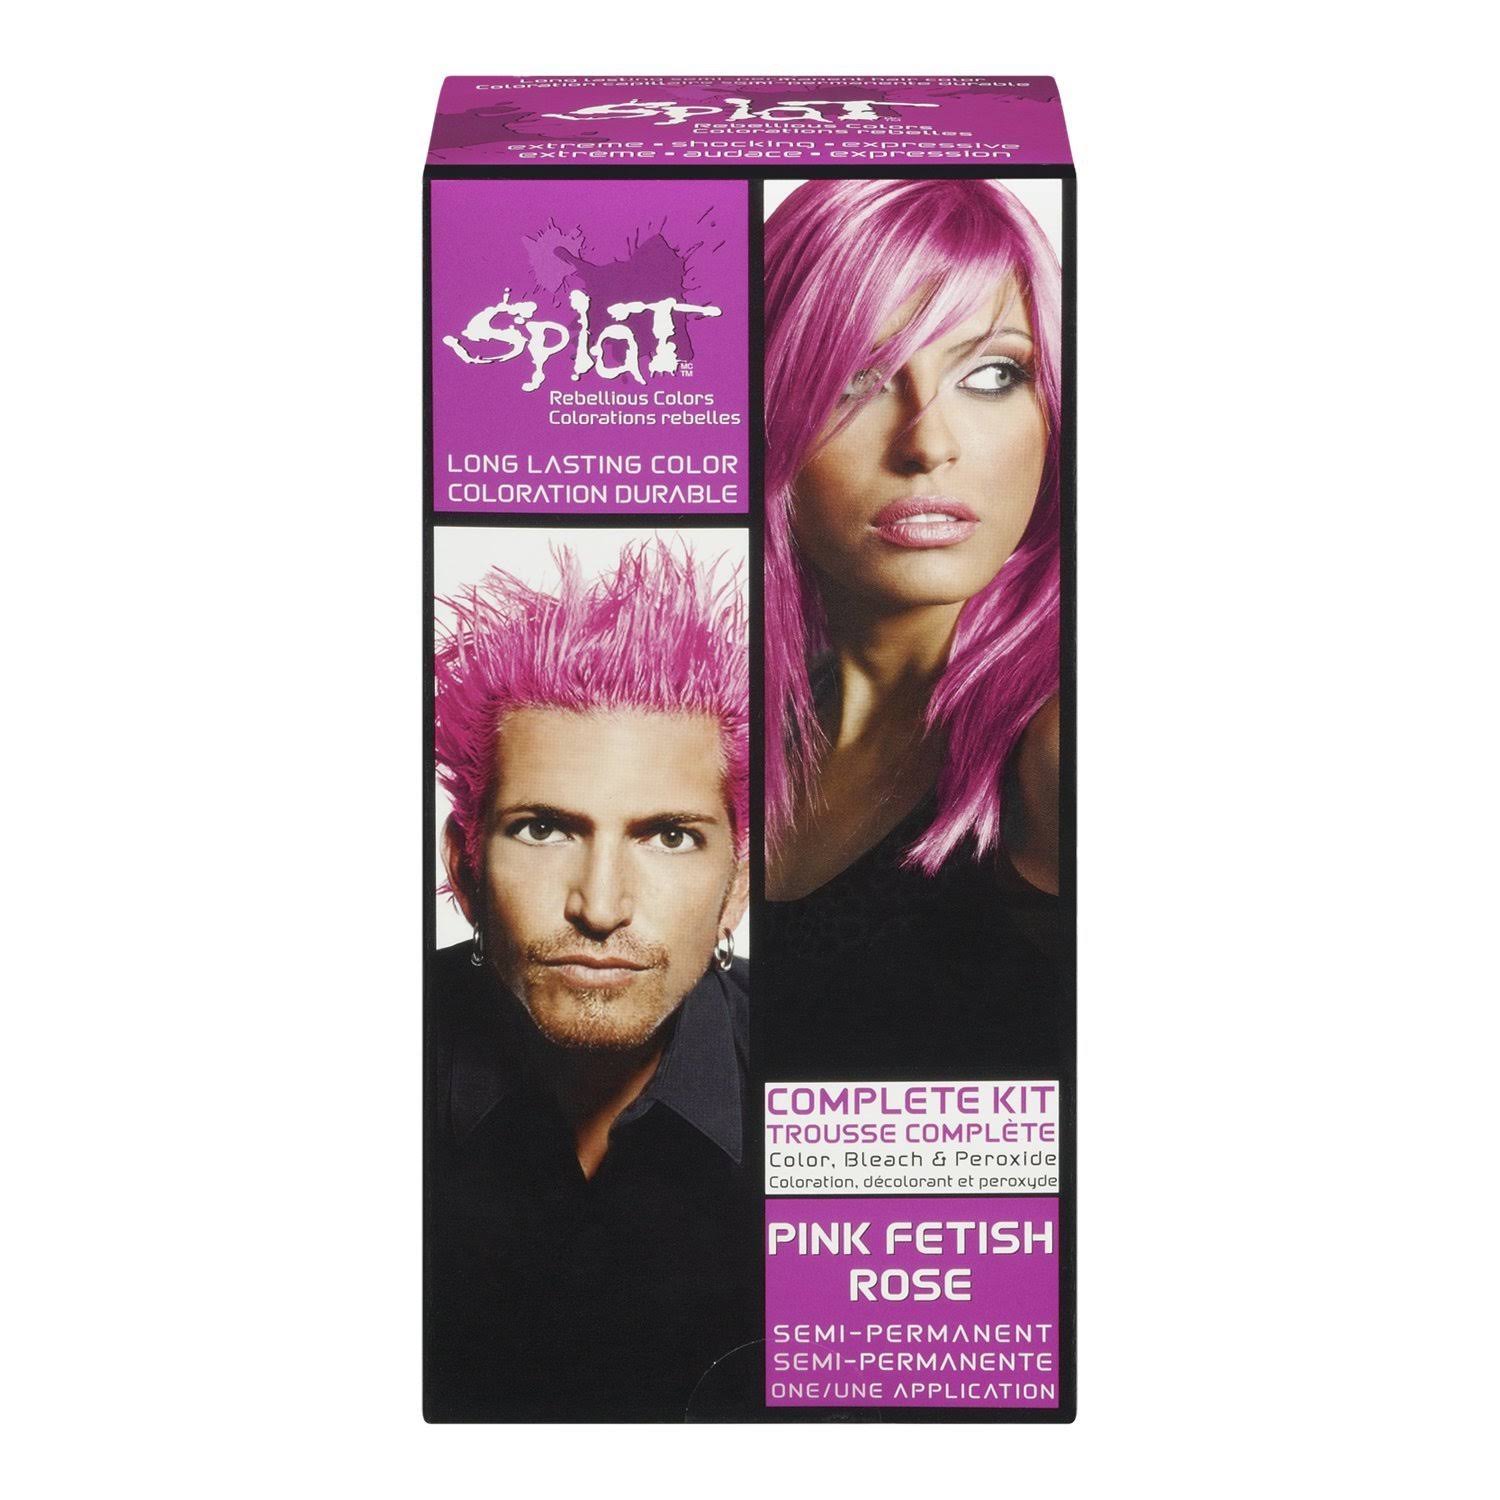 Splat Complete Hair Color Kit - Pink Fetish